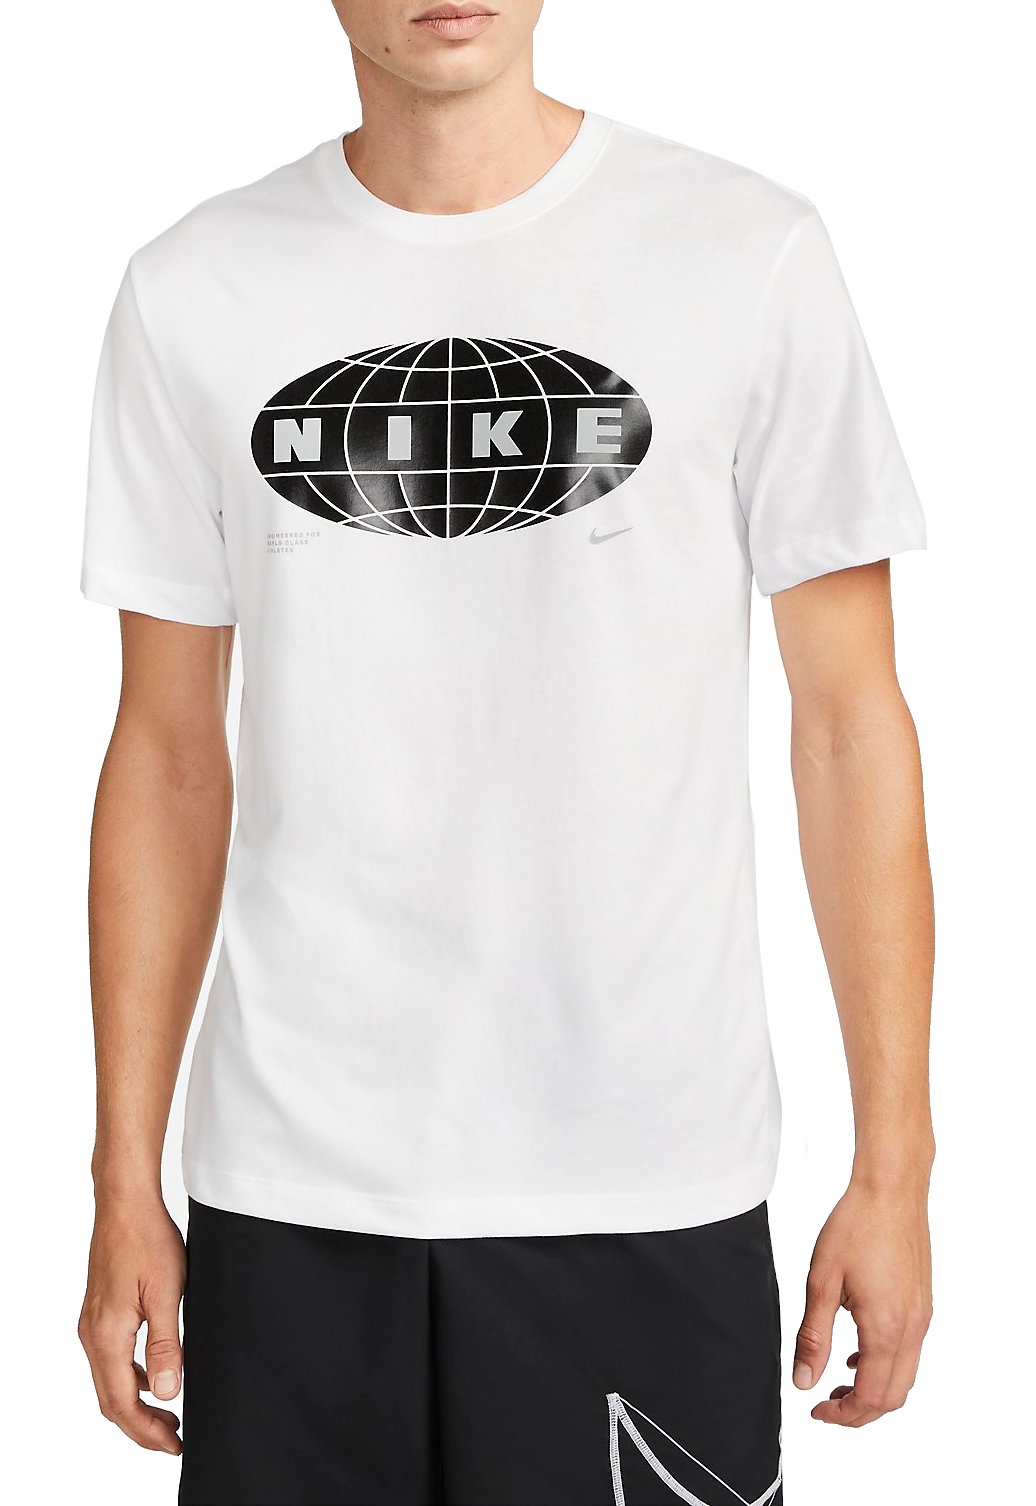 Tričko Nike Dri-FIT Men s Graphic Fitness T-Shirt